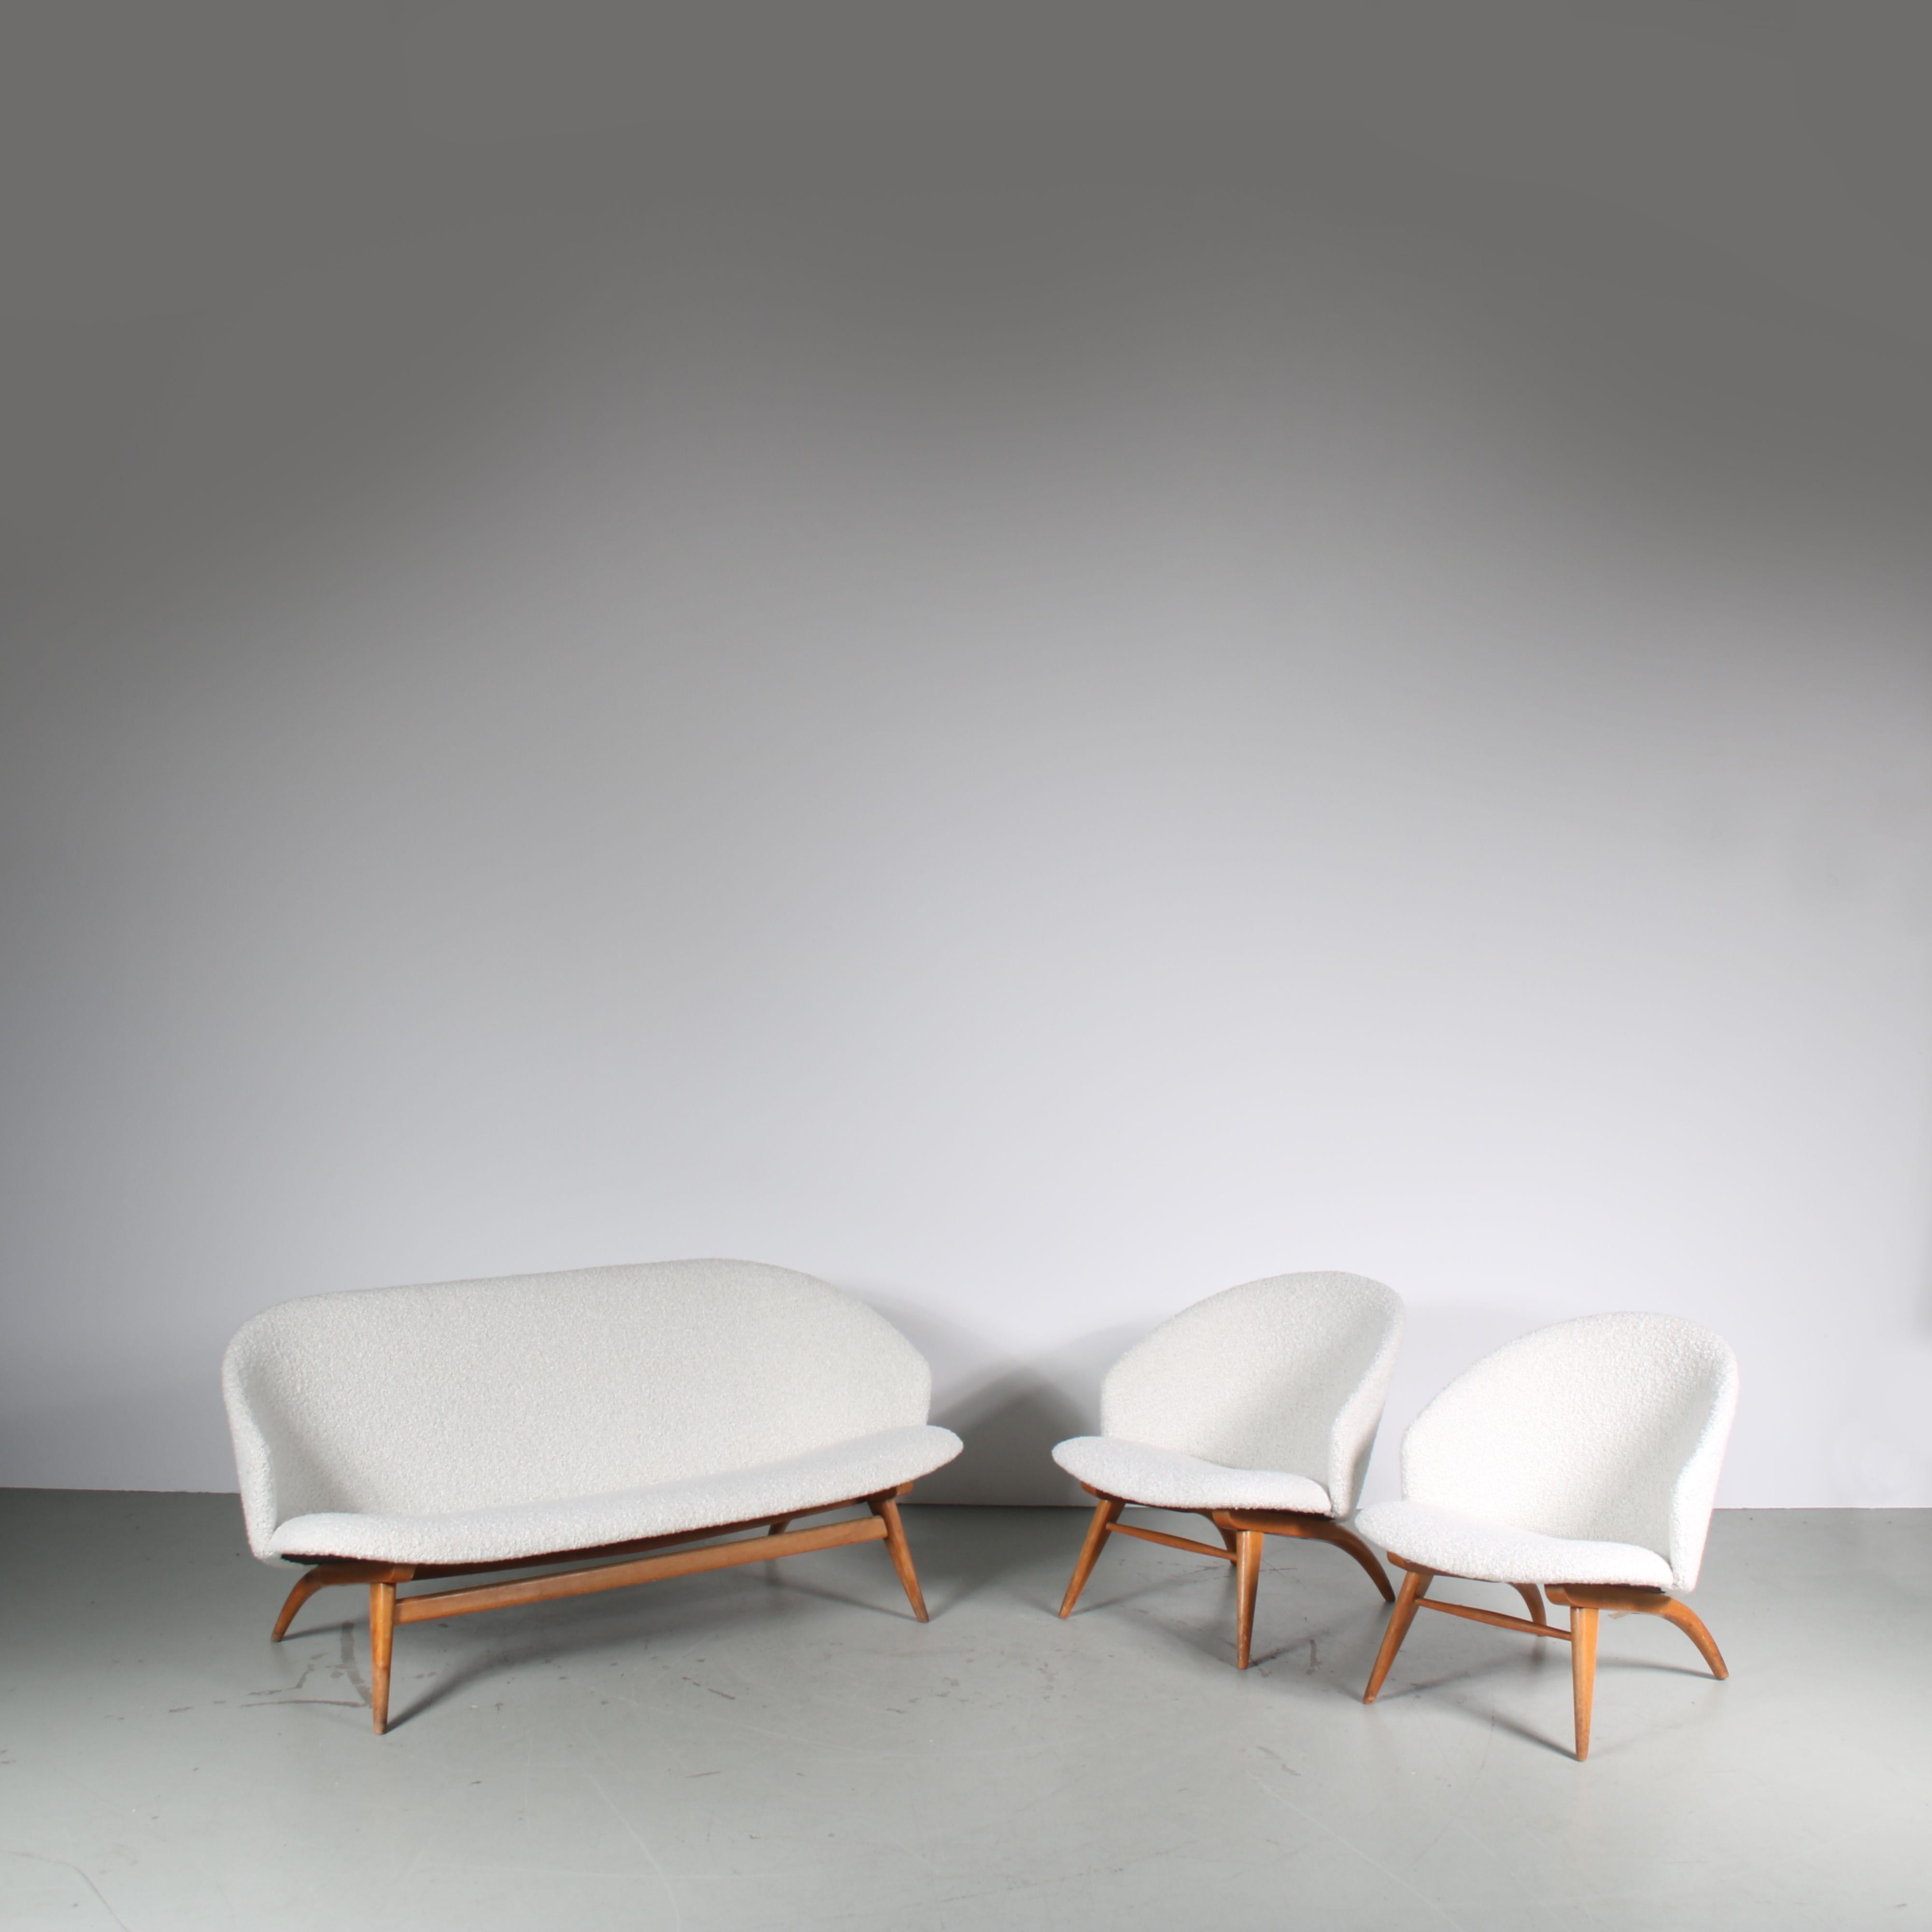 Ein auffälliges Set aus einem 3-sitzigen Sofa und 2 Sesseln, entworfen von Theo Ruth und hergestellt von Artifort in den Niederlanden um 1950.

Die eleganten Elegs haben einen hochwertigen, sanft geschwungenen Birkenholzrahmen mit einer